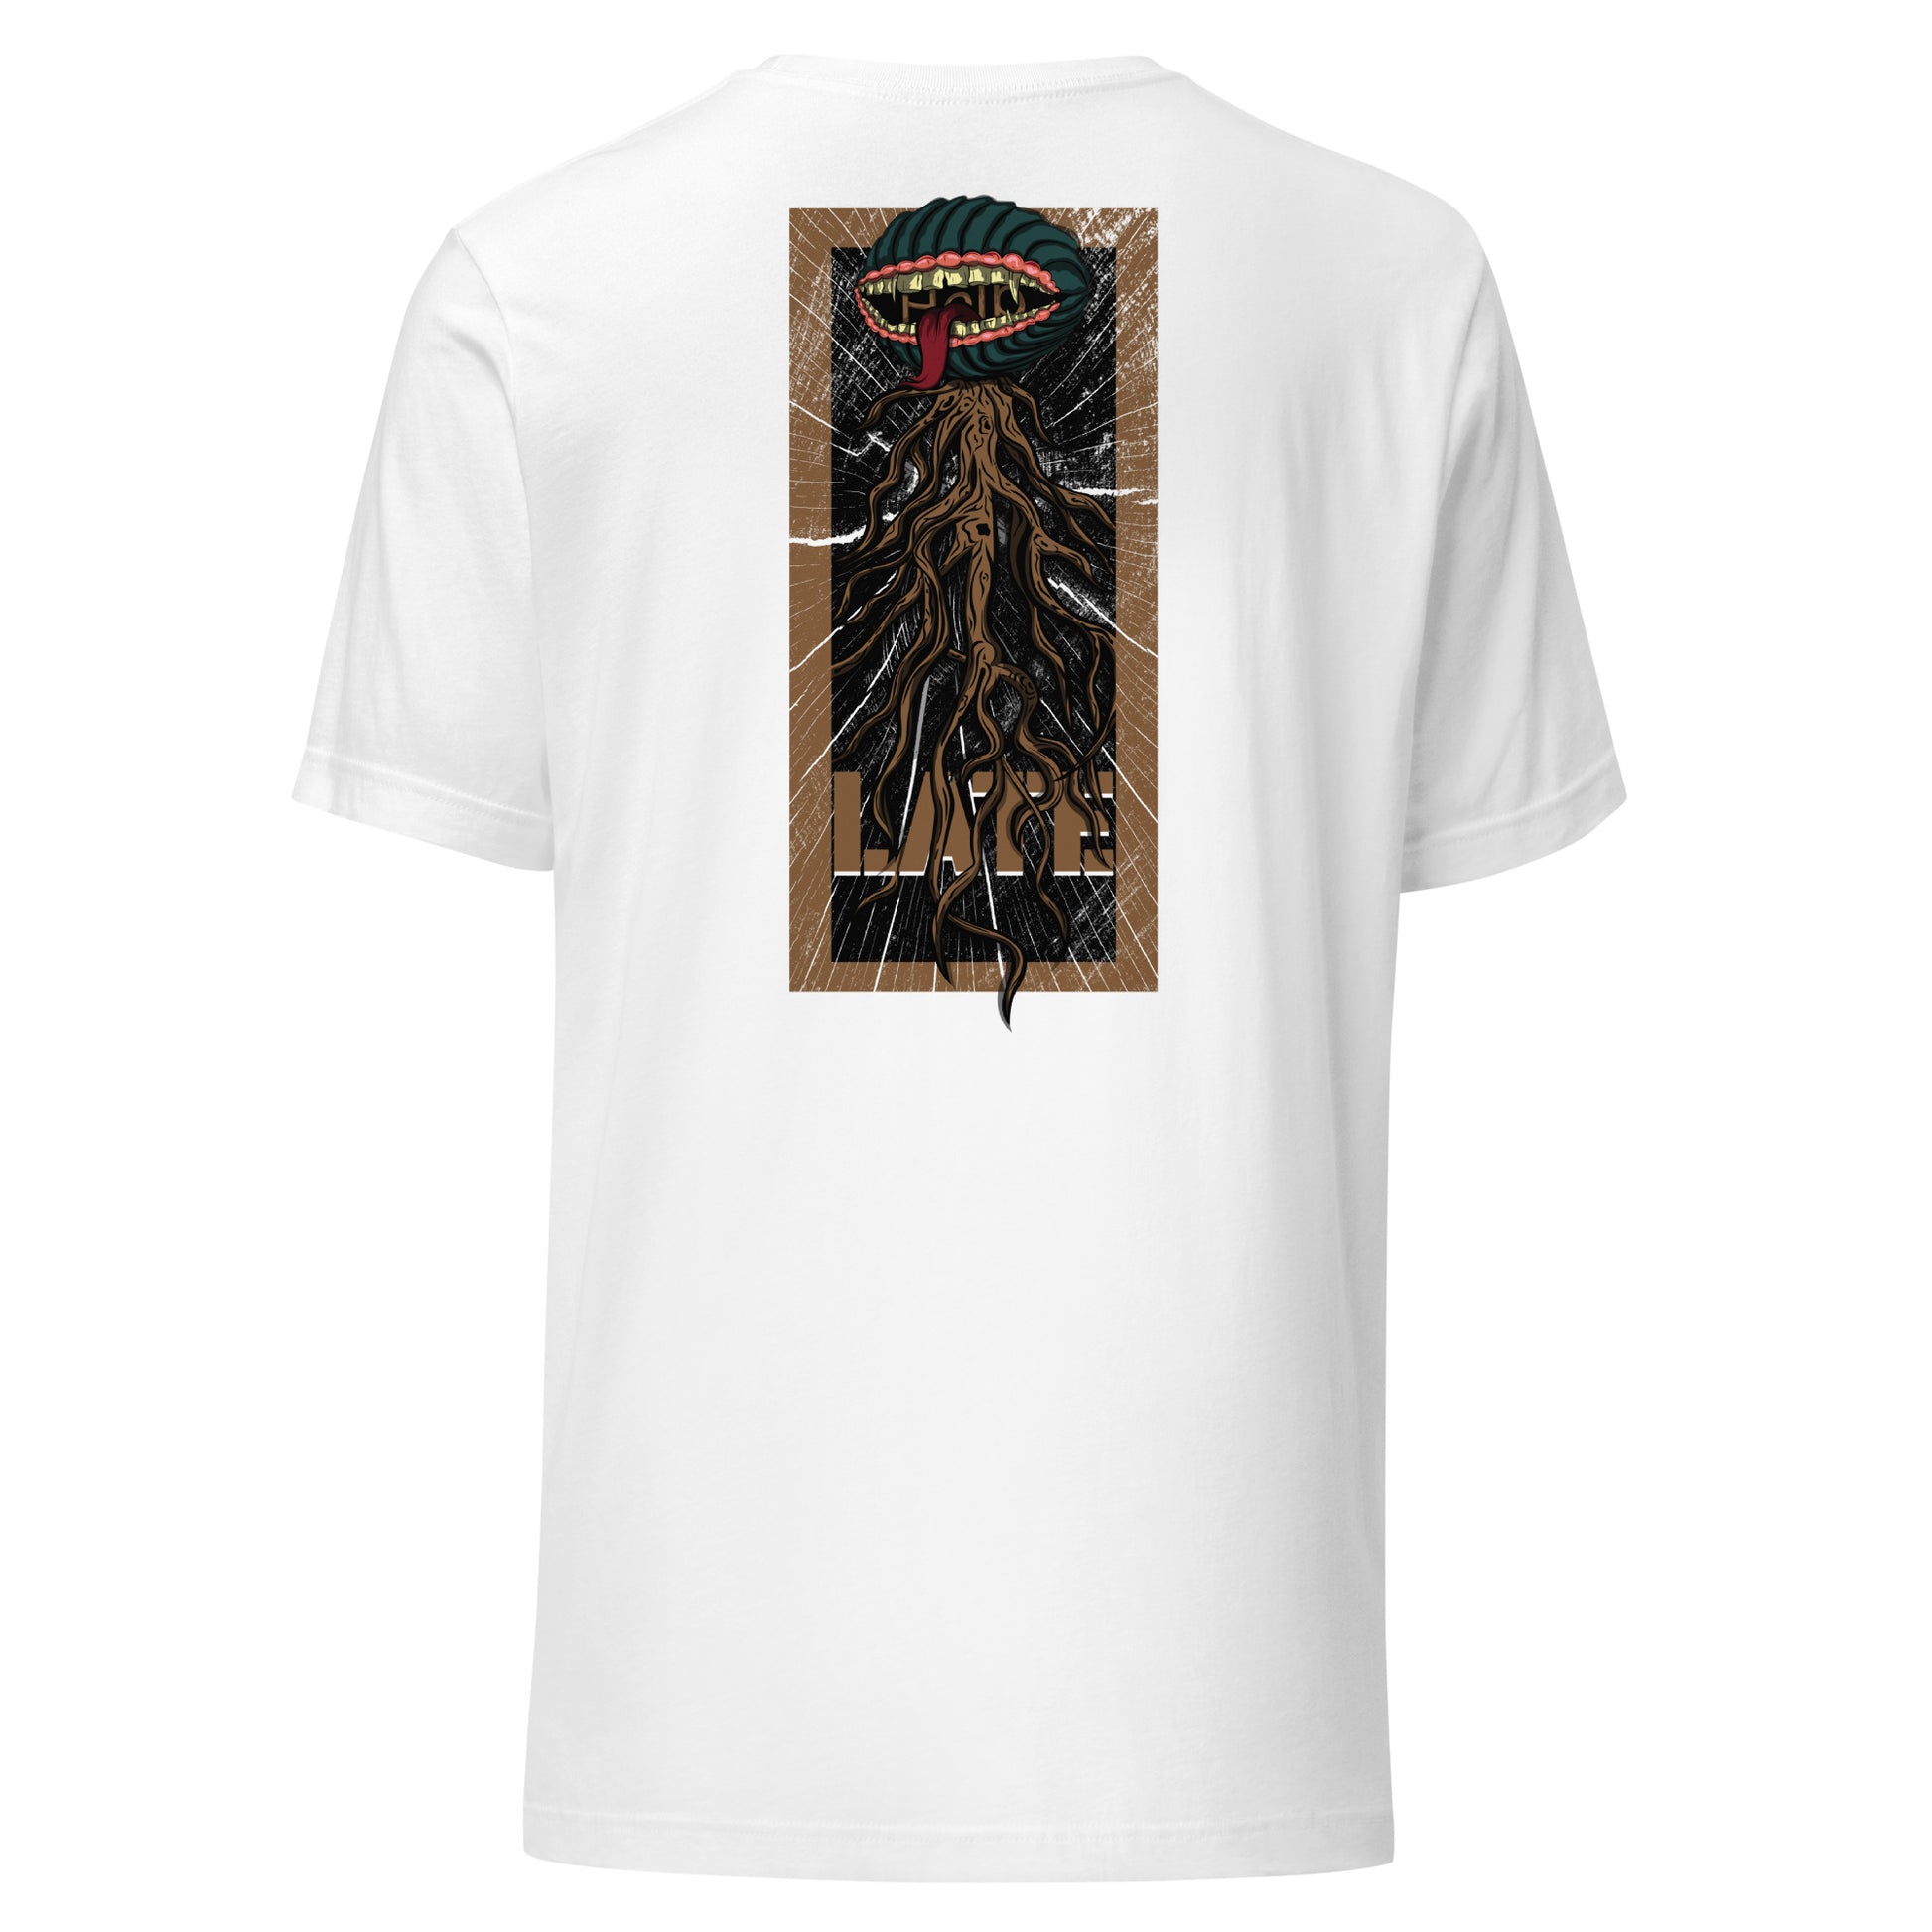 T-shirt style santacruz skateboarding plante carnivore effet bois tshirt unisex dos couleur blanc